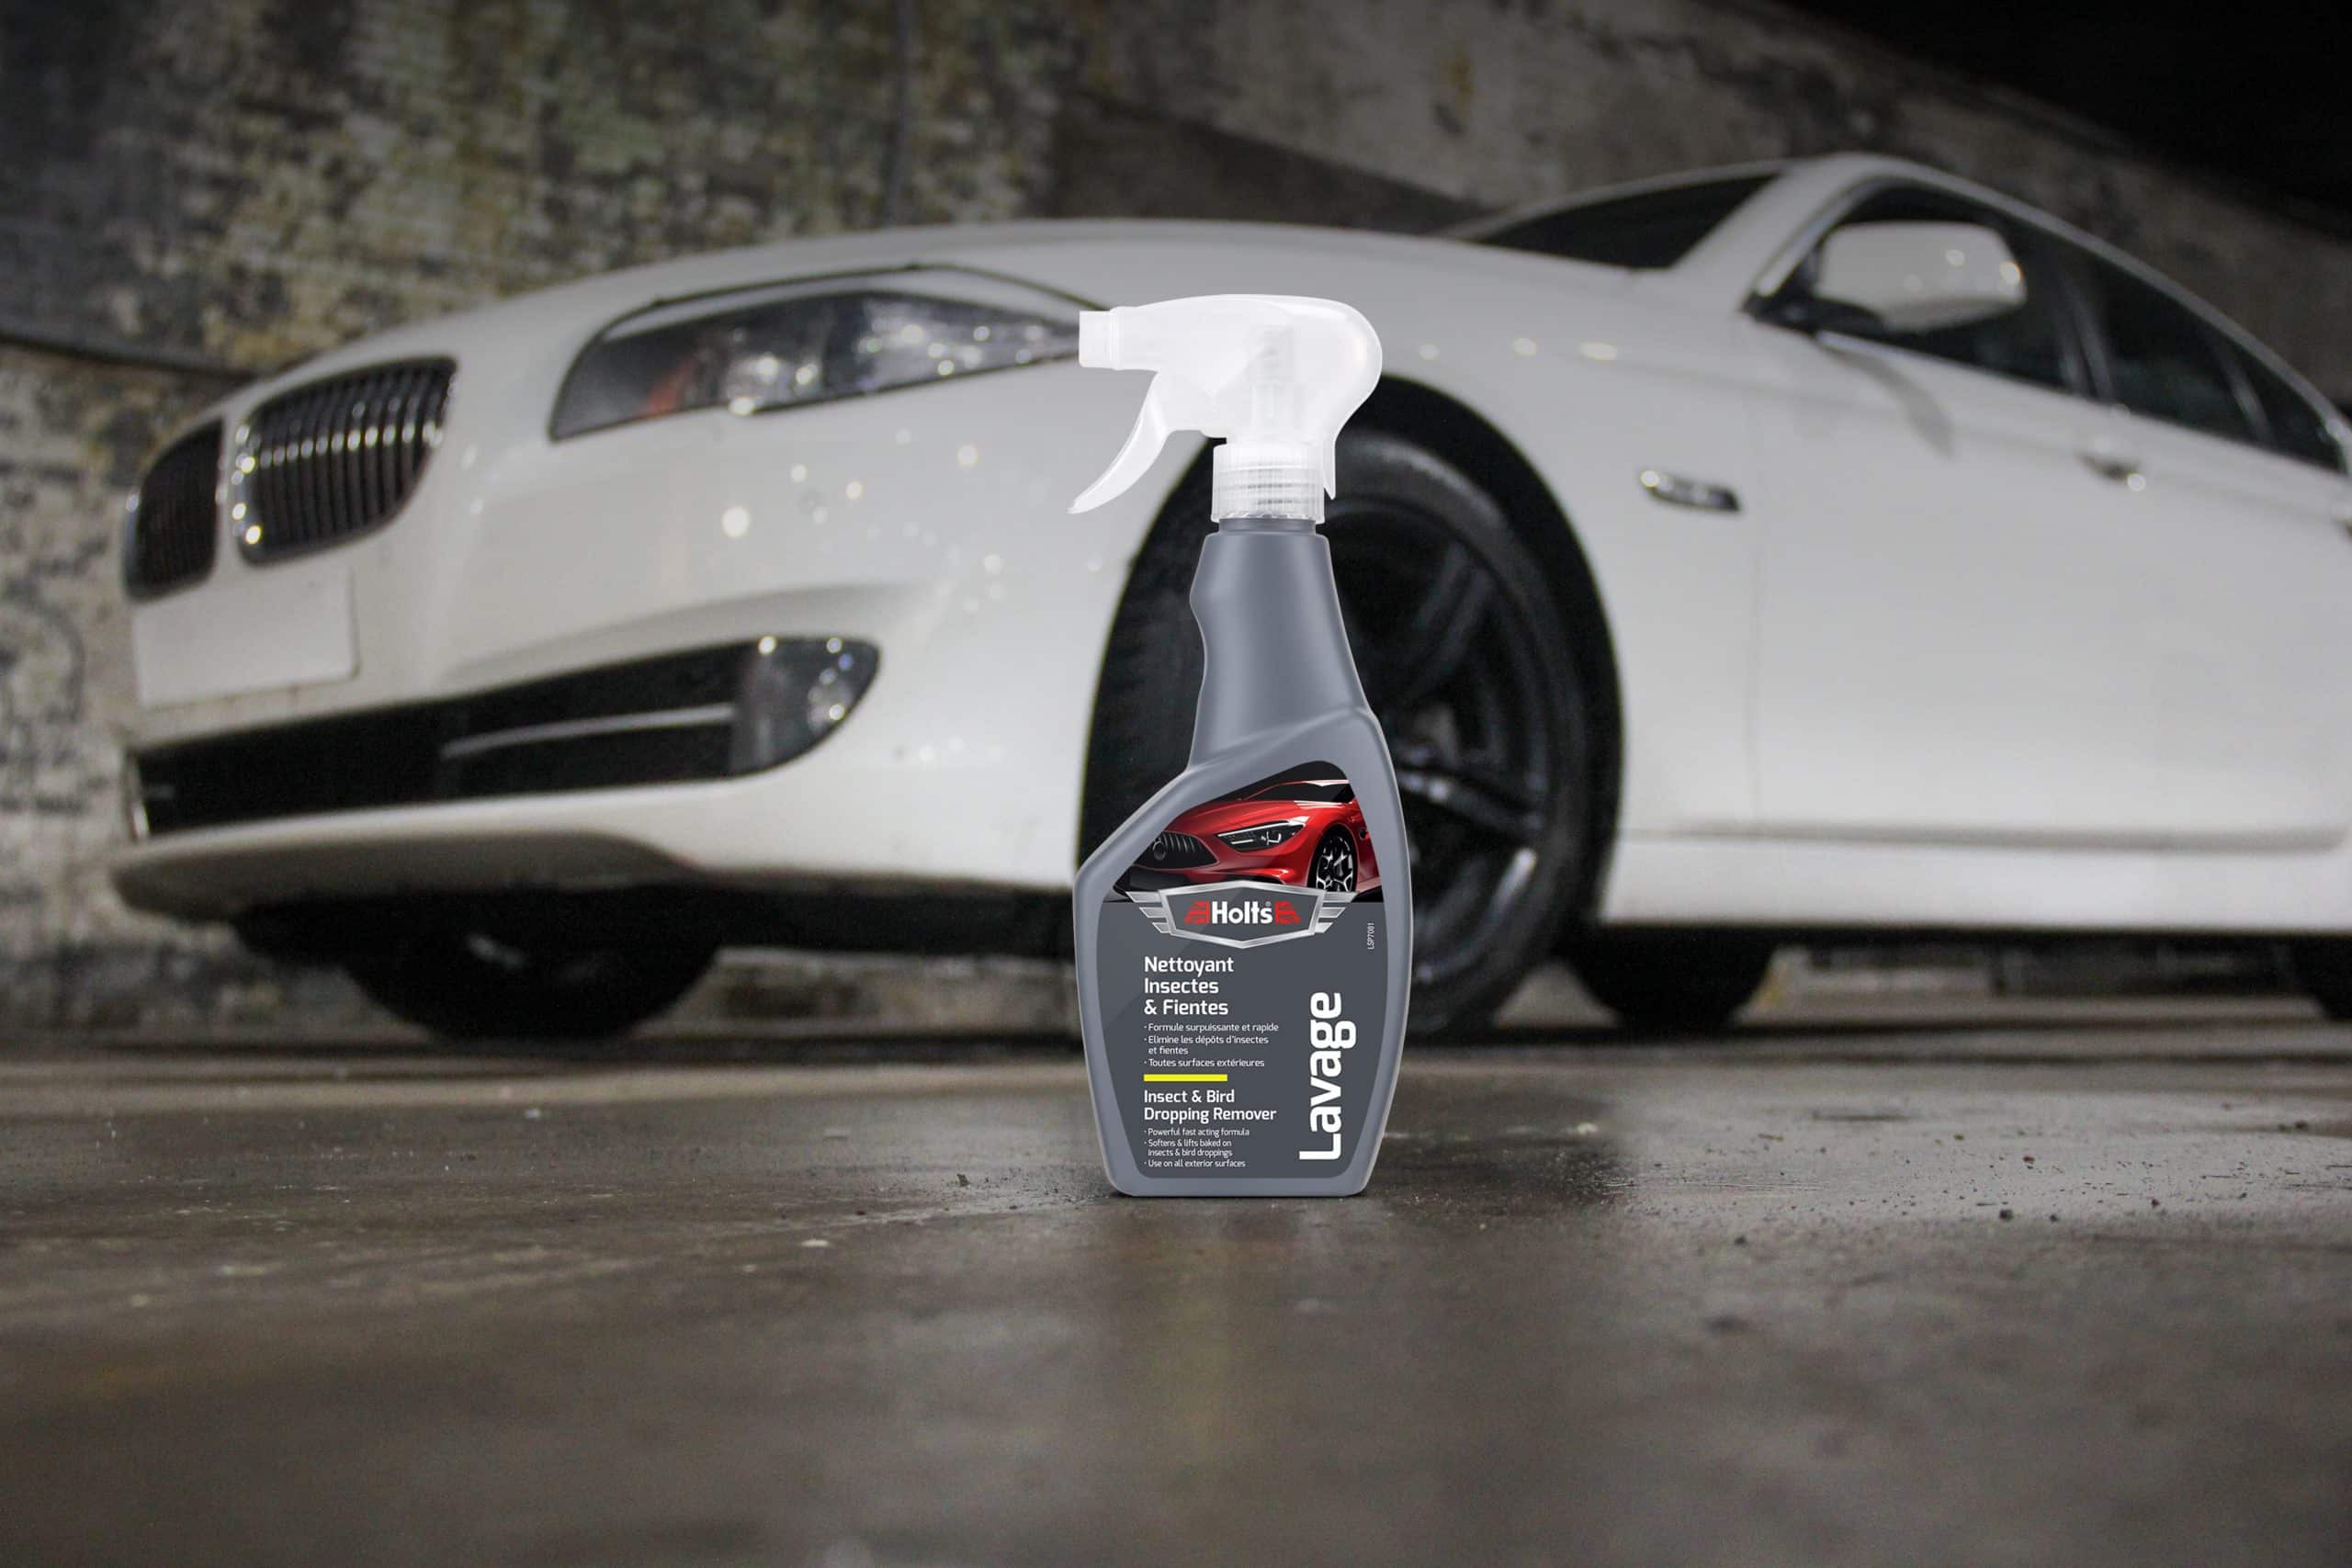 Nettoyage de votre voiture : ce qu’il faut faire et éviter